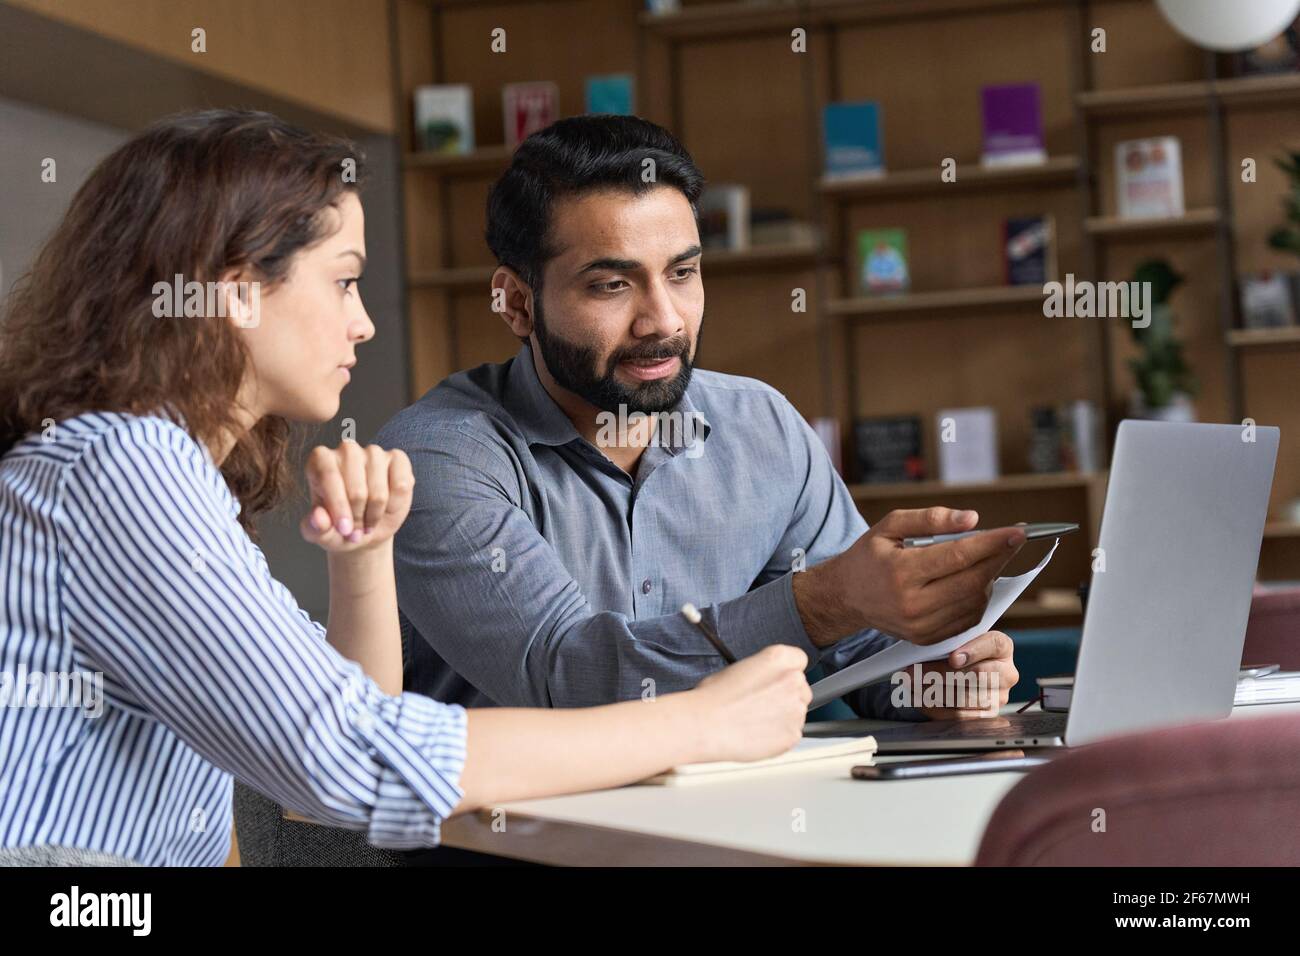 Insegnante o mentore indiano che aiuta lo studente latino, insegnando intern usando il laptop. Foto Stock